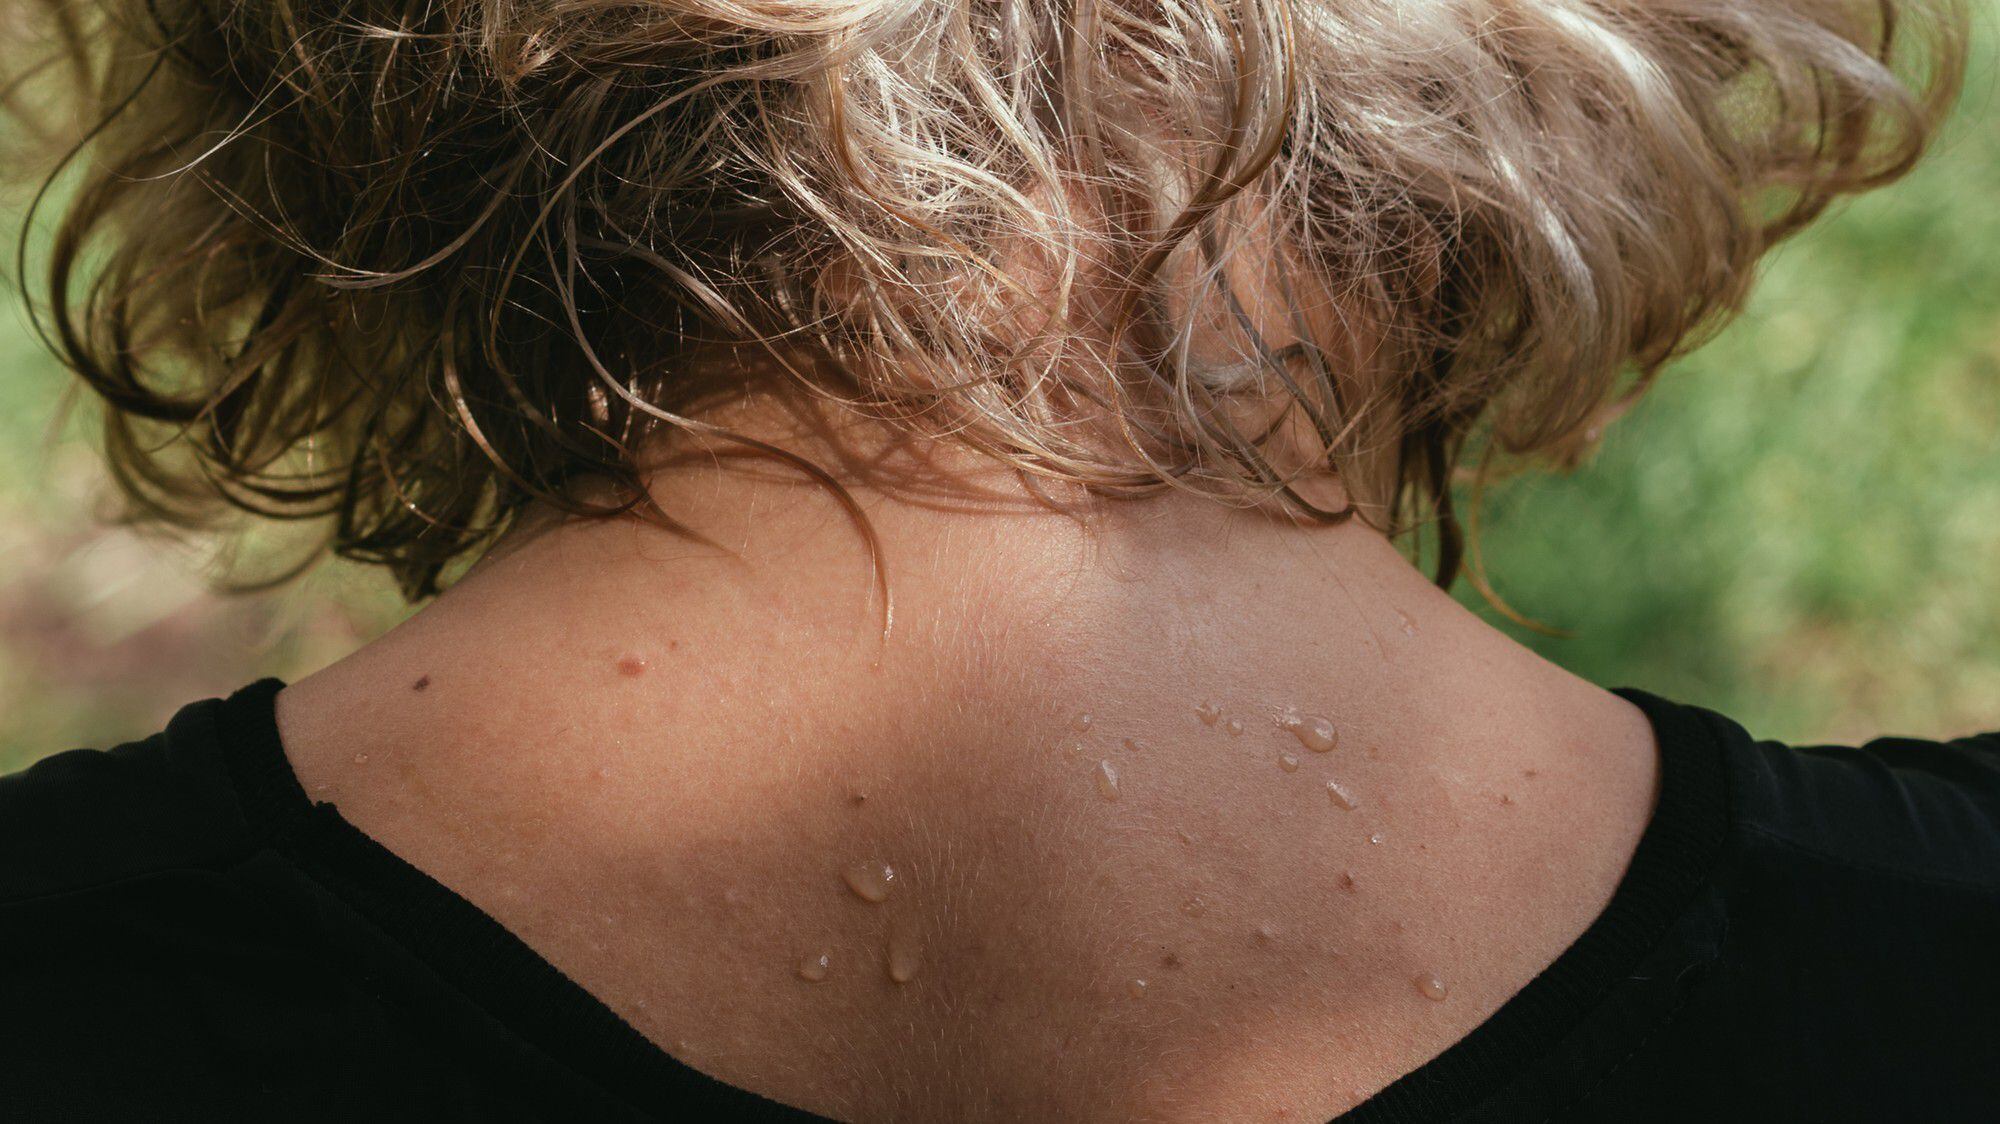 La nueva piel podría ayudar a las personas con sudoración excesiva